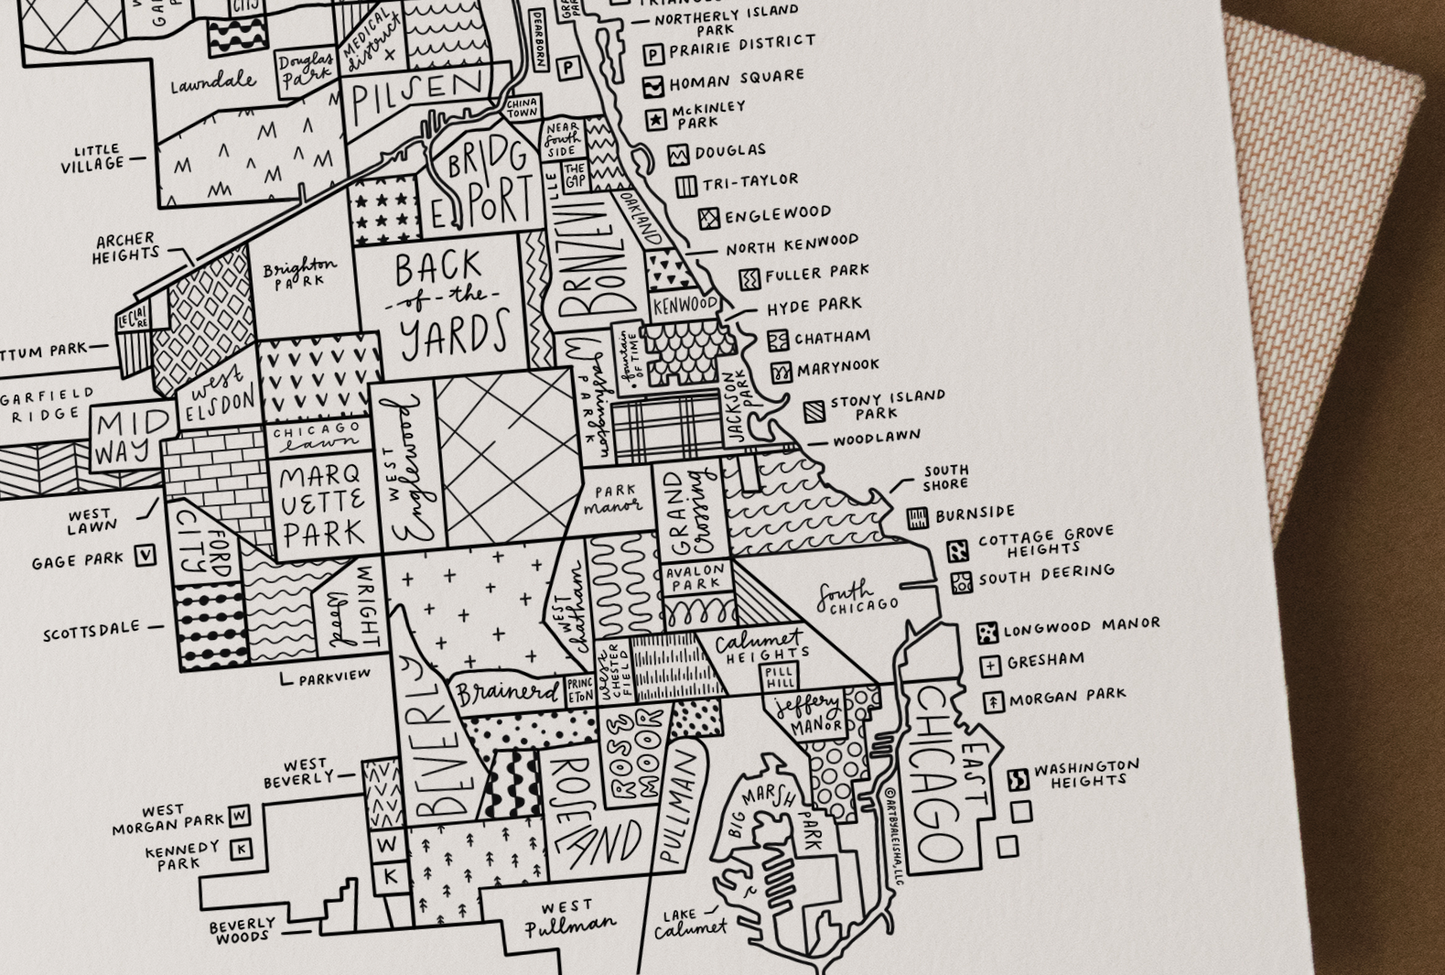 Chicago Neighborhood Map Print